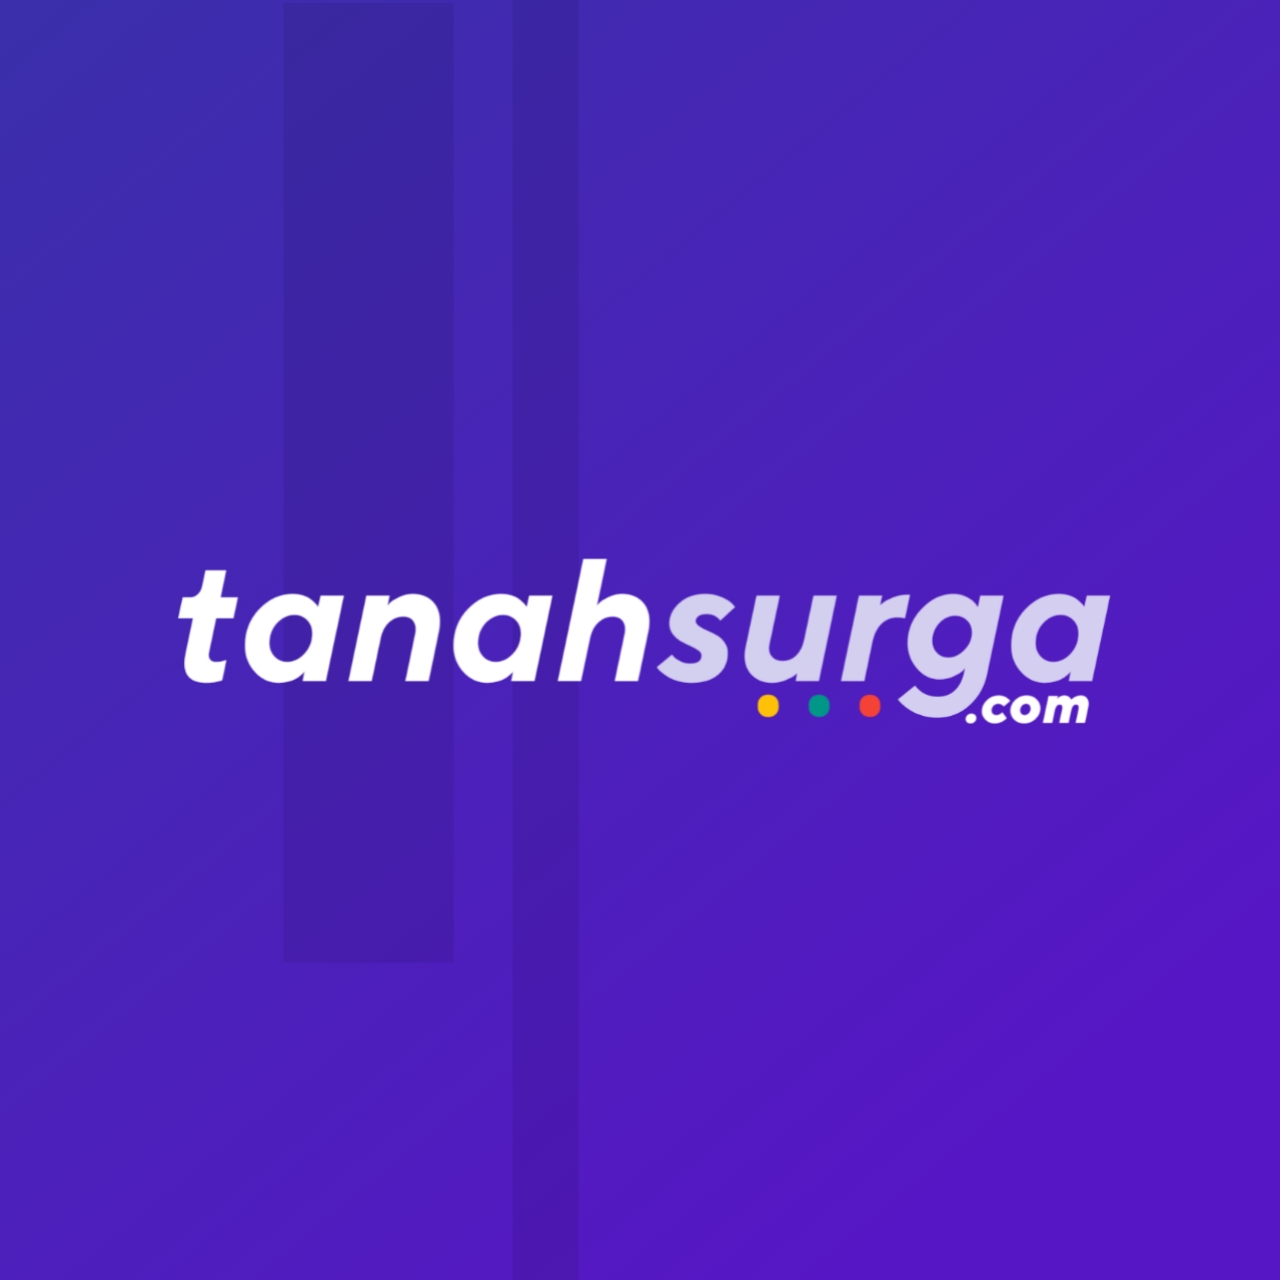  Tanahsurga.com